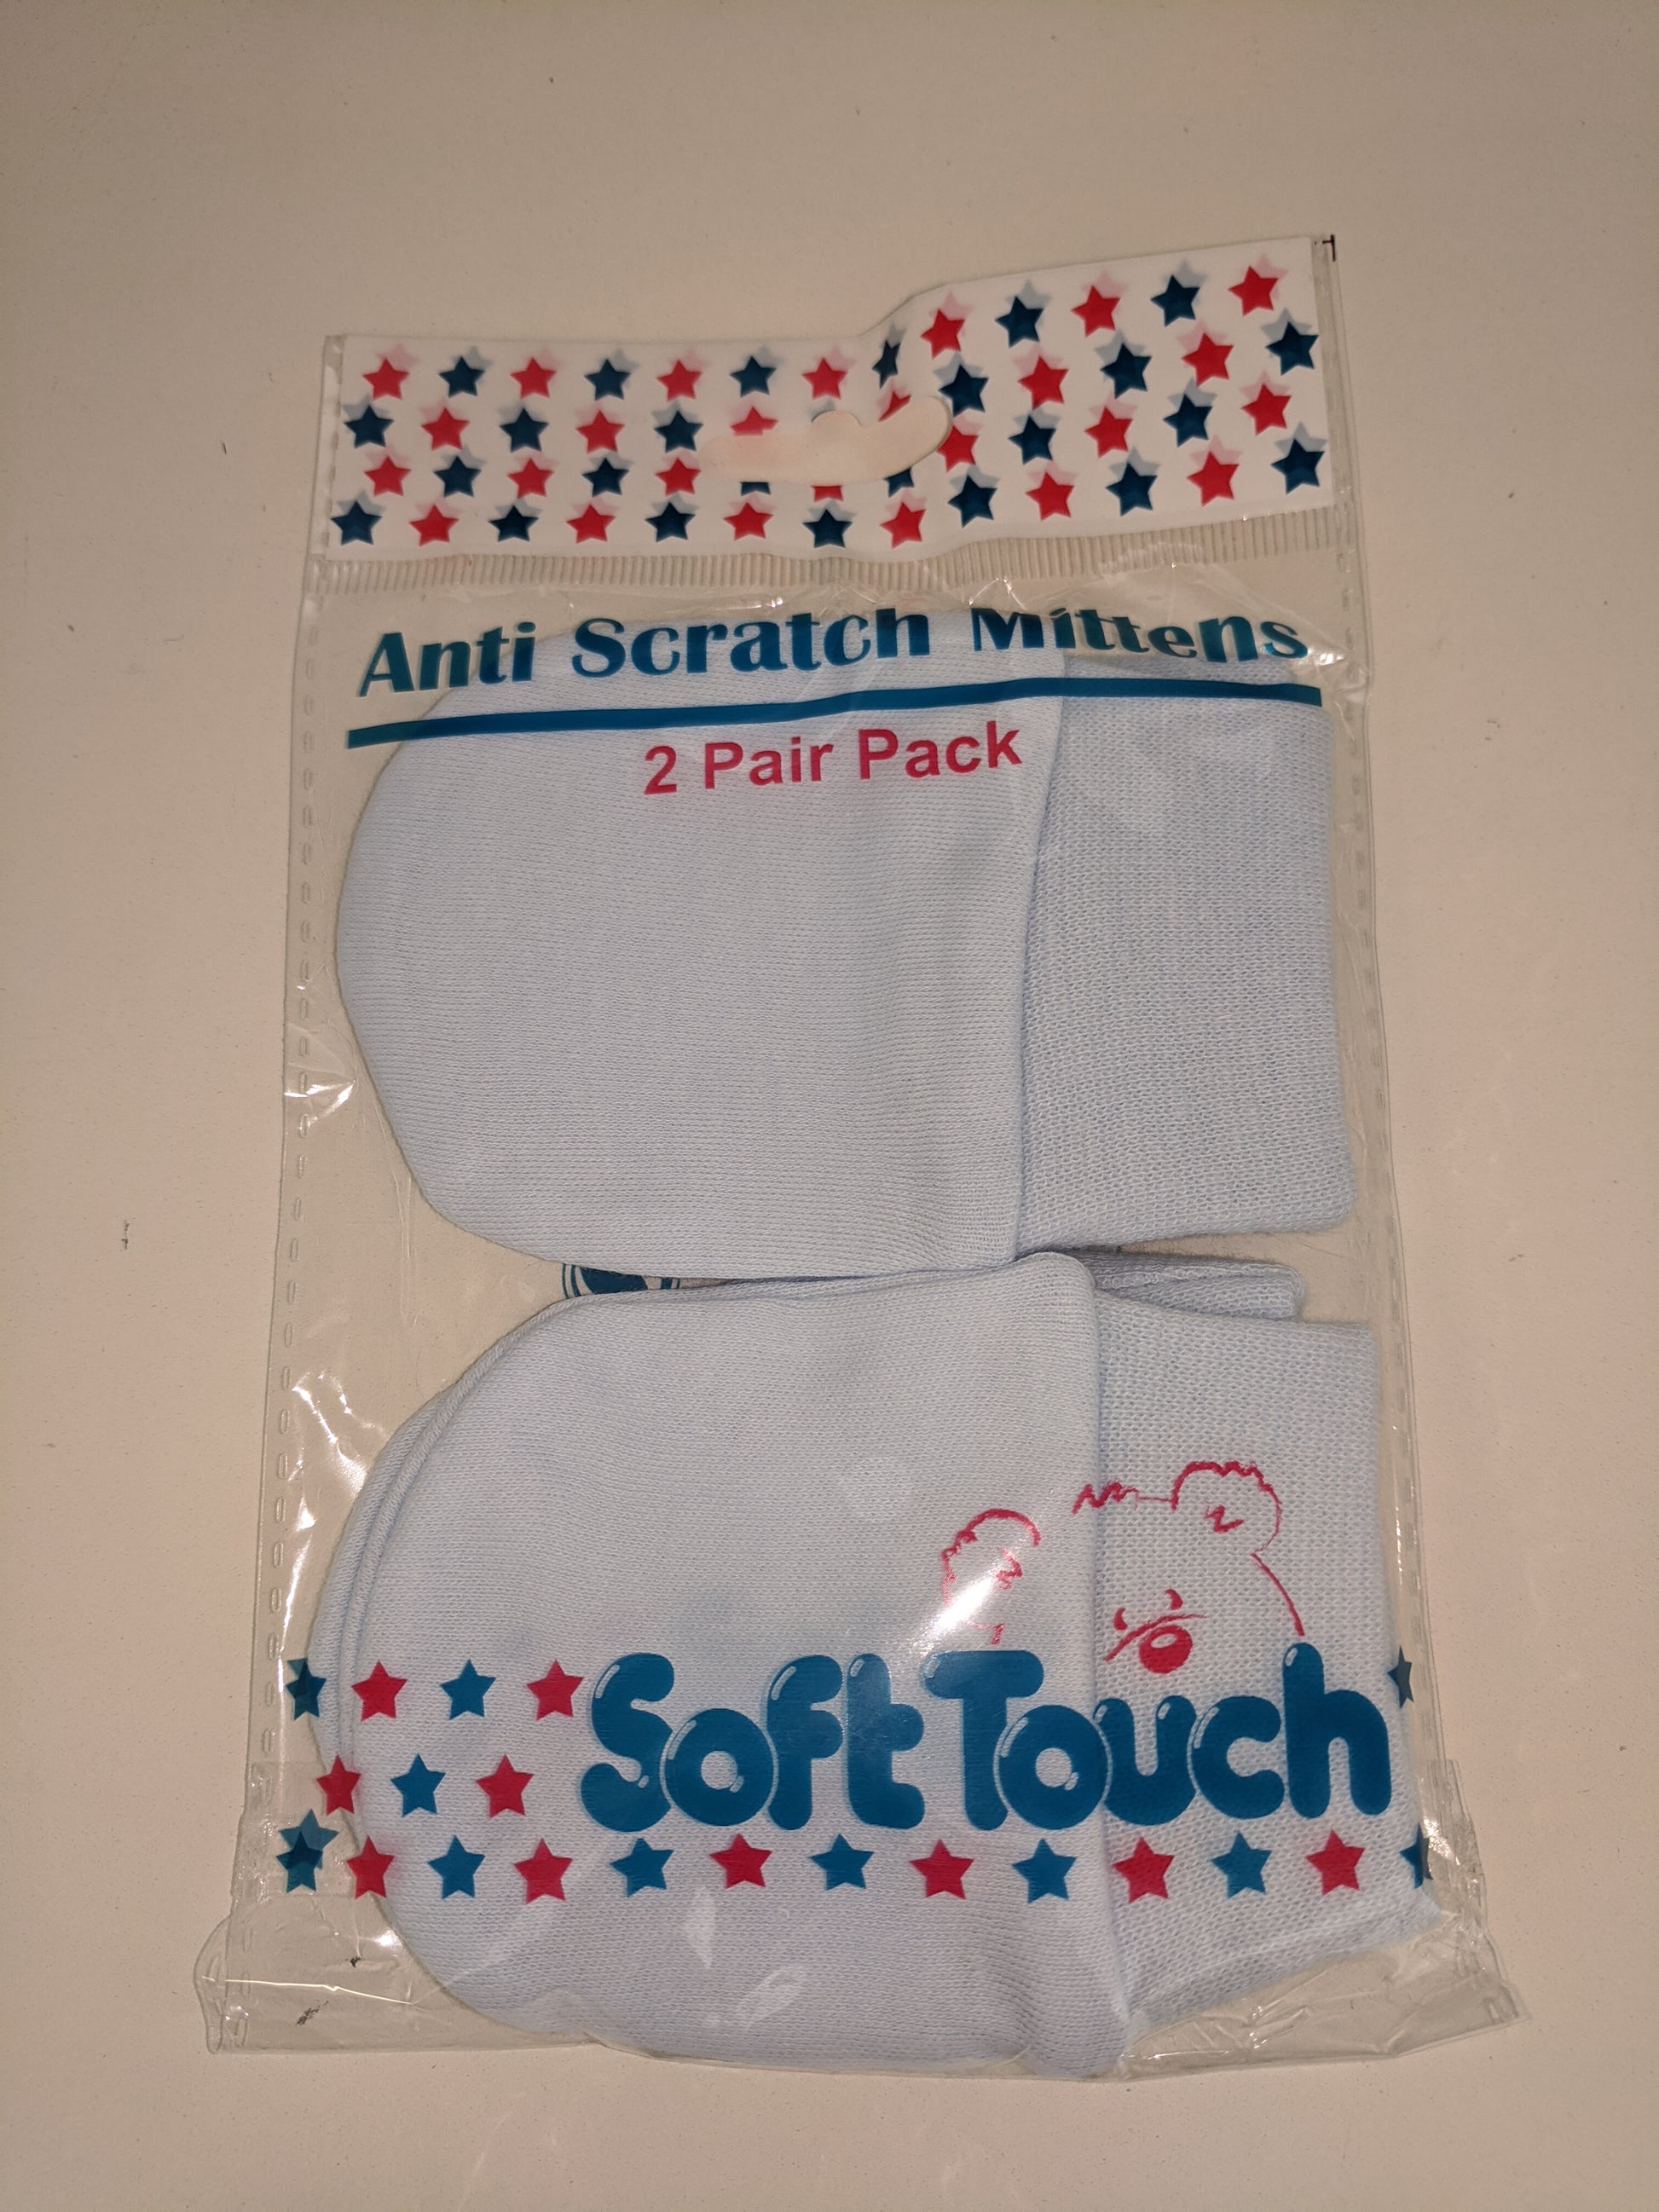 Anti Scratch Mittens